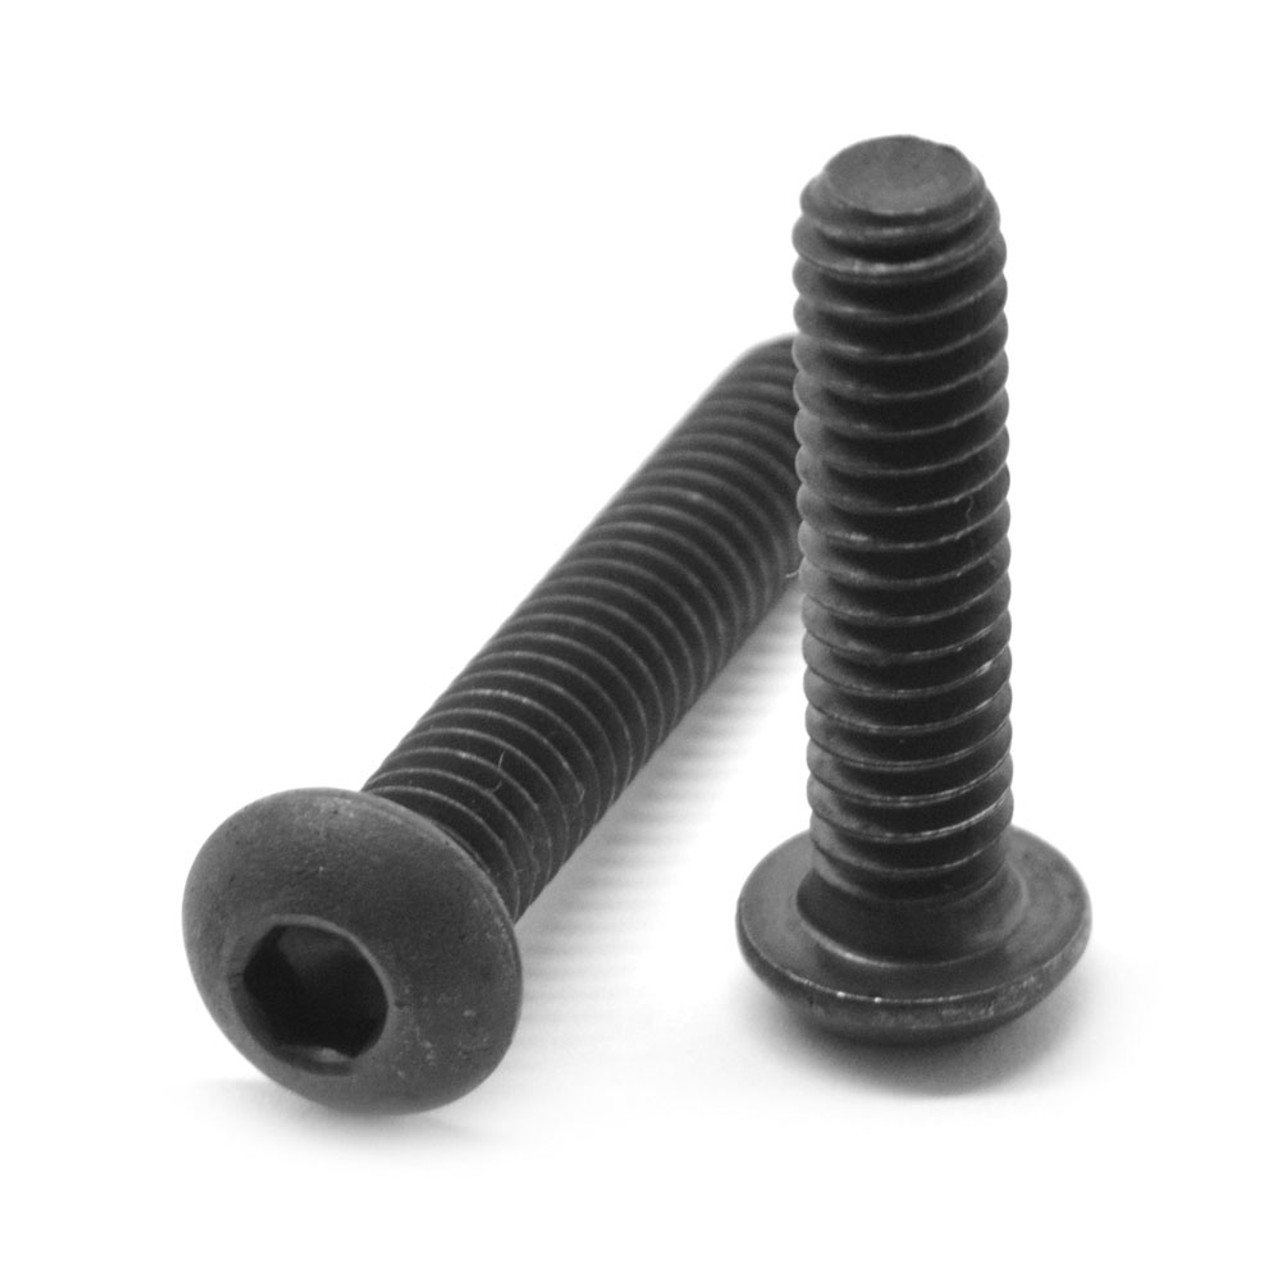 #10-32 x 2" (FT) Fine Thread Socket Button Head Cap Screw Alloy Steel Black Oxide